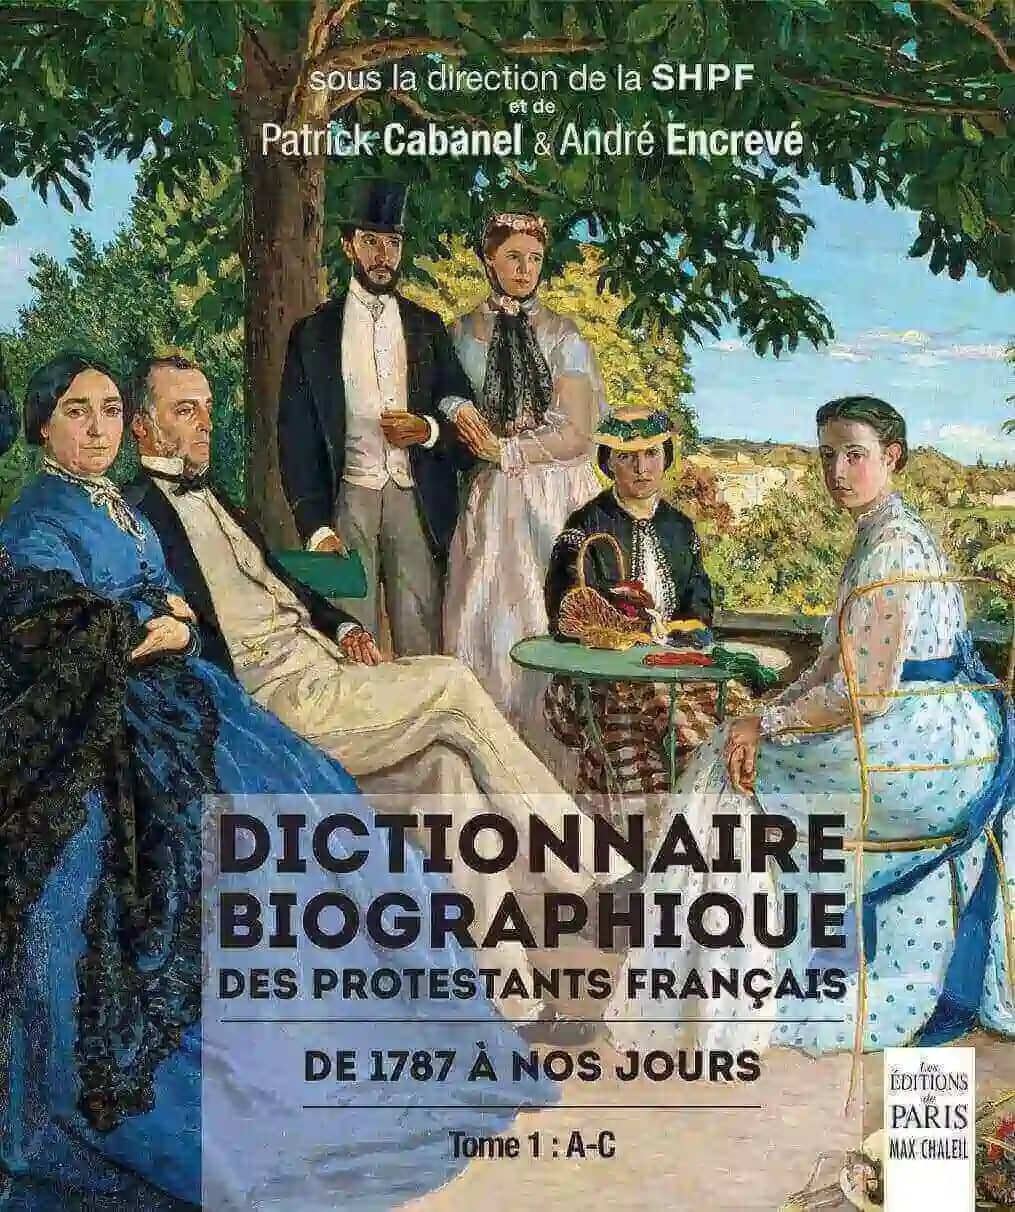 Tome 1 : A-C / Dictionnaire Biographique des Protestants Français